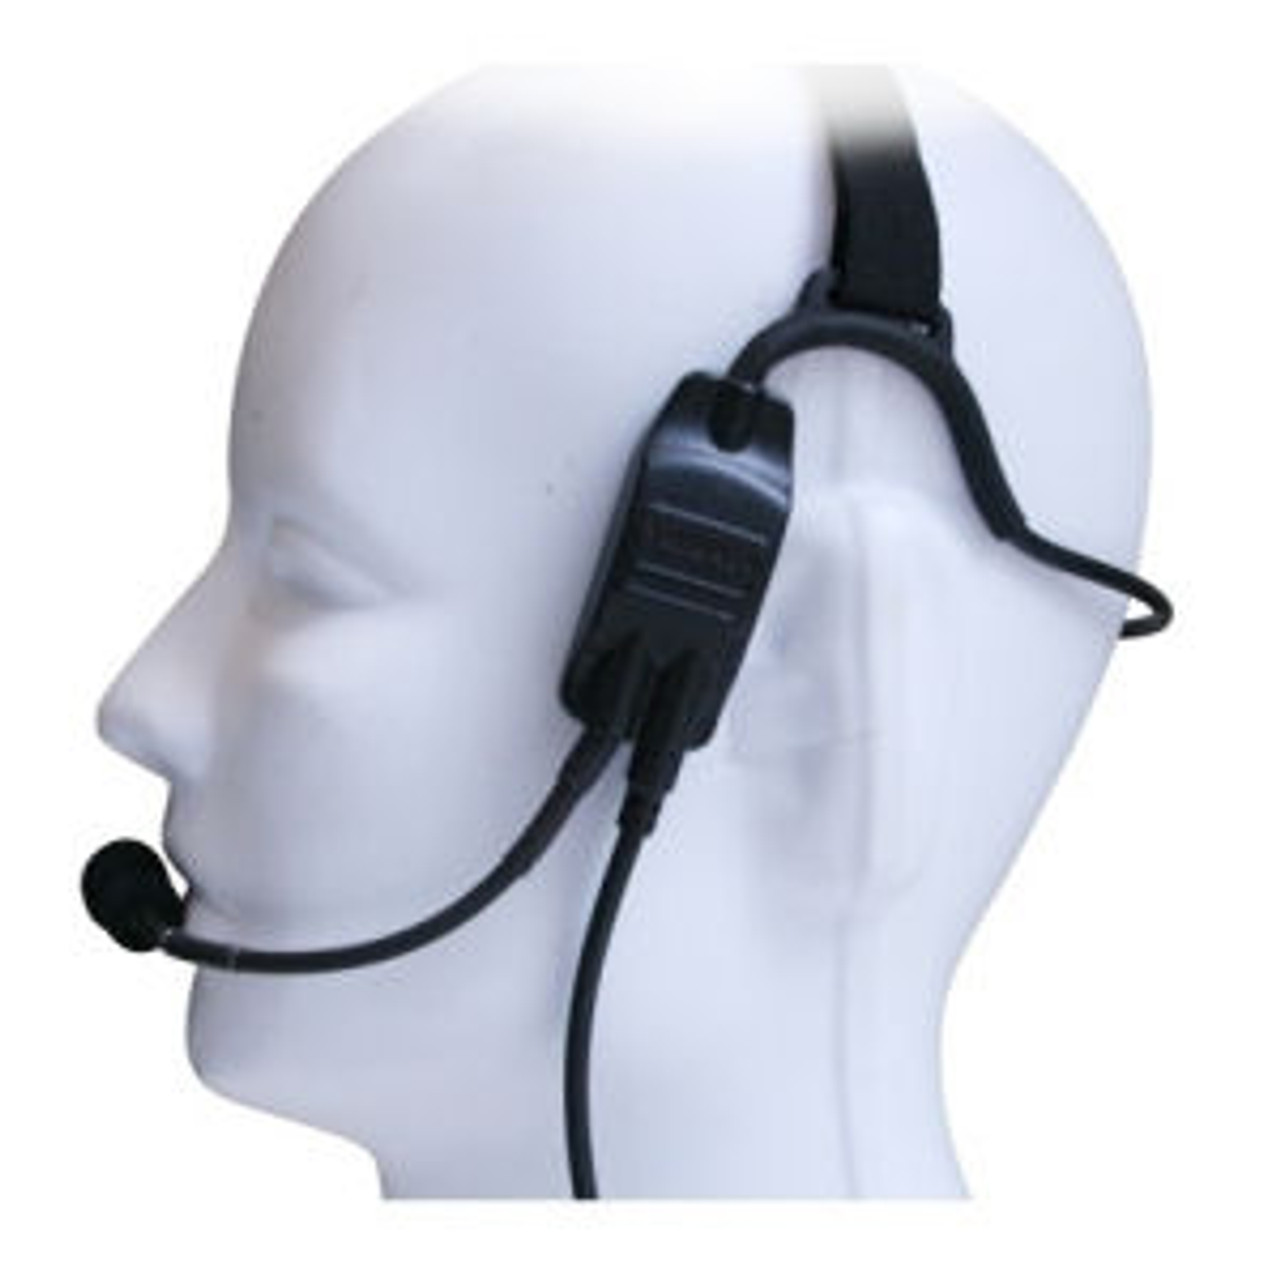 Kenwood TK-2312 Temple Transducer Headset